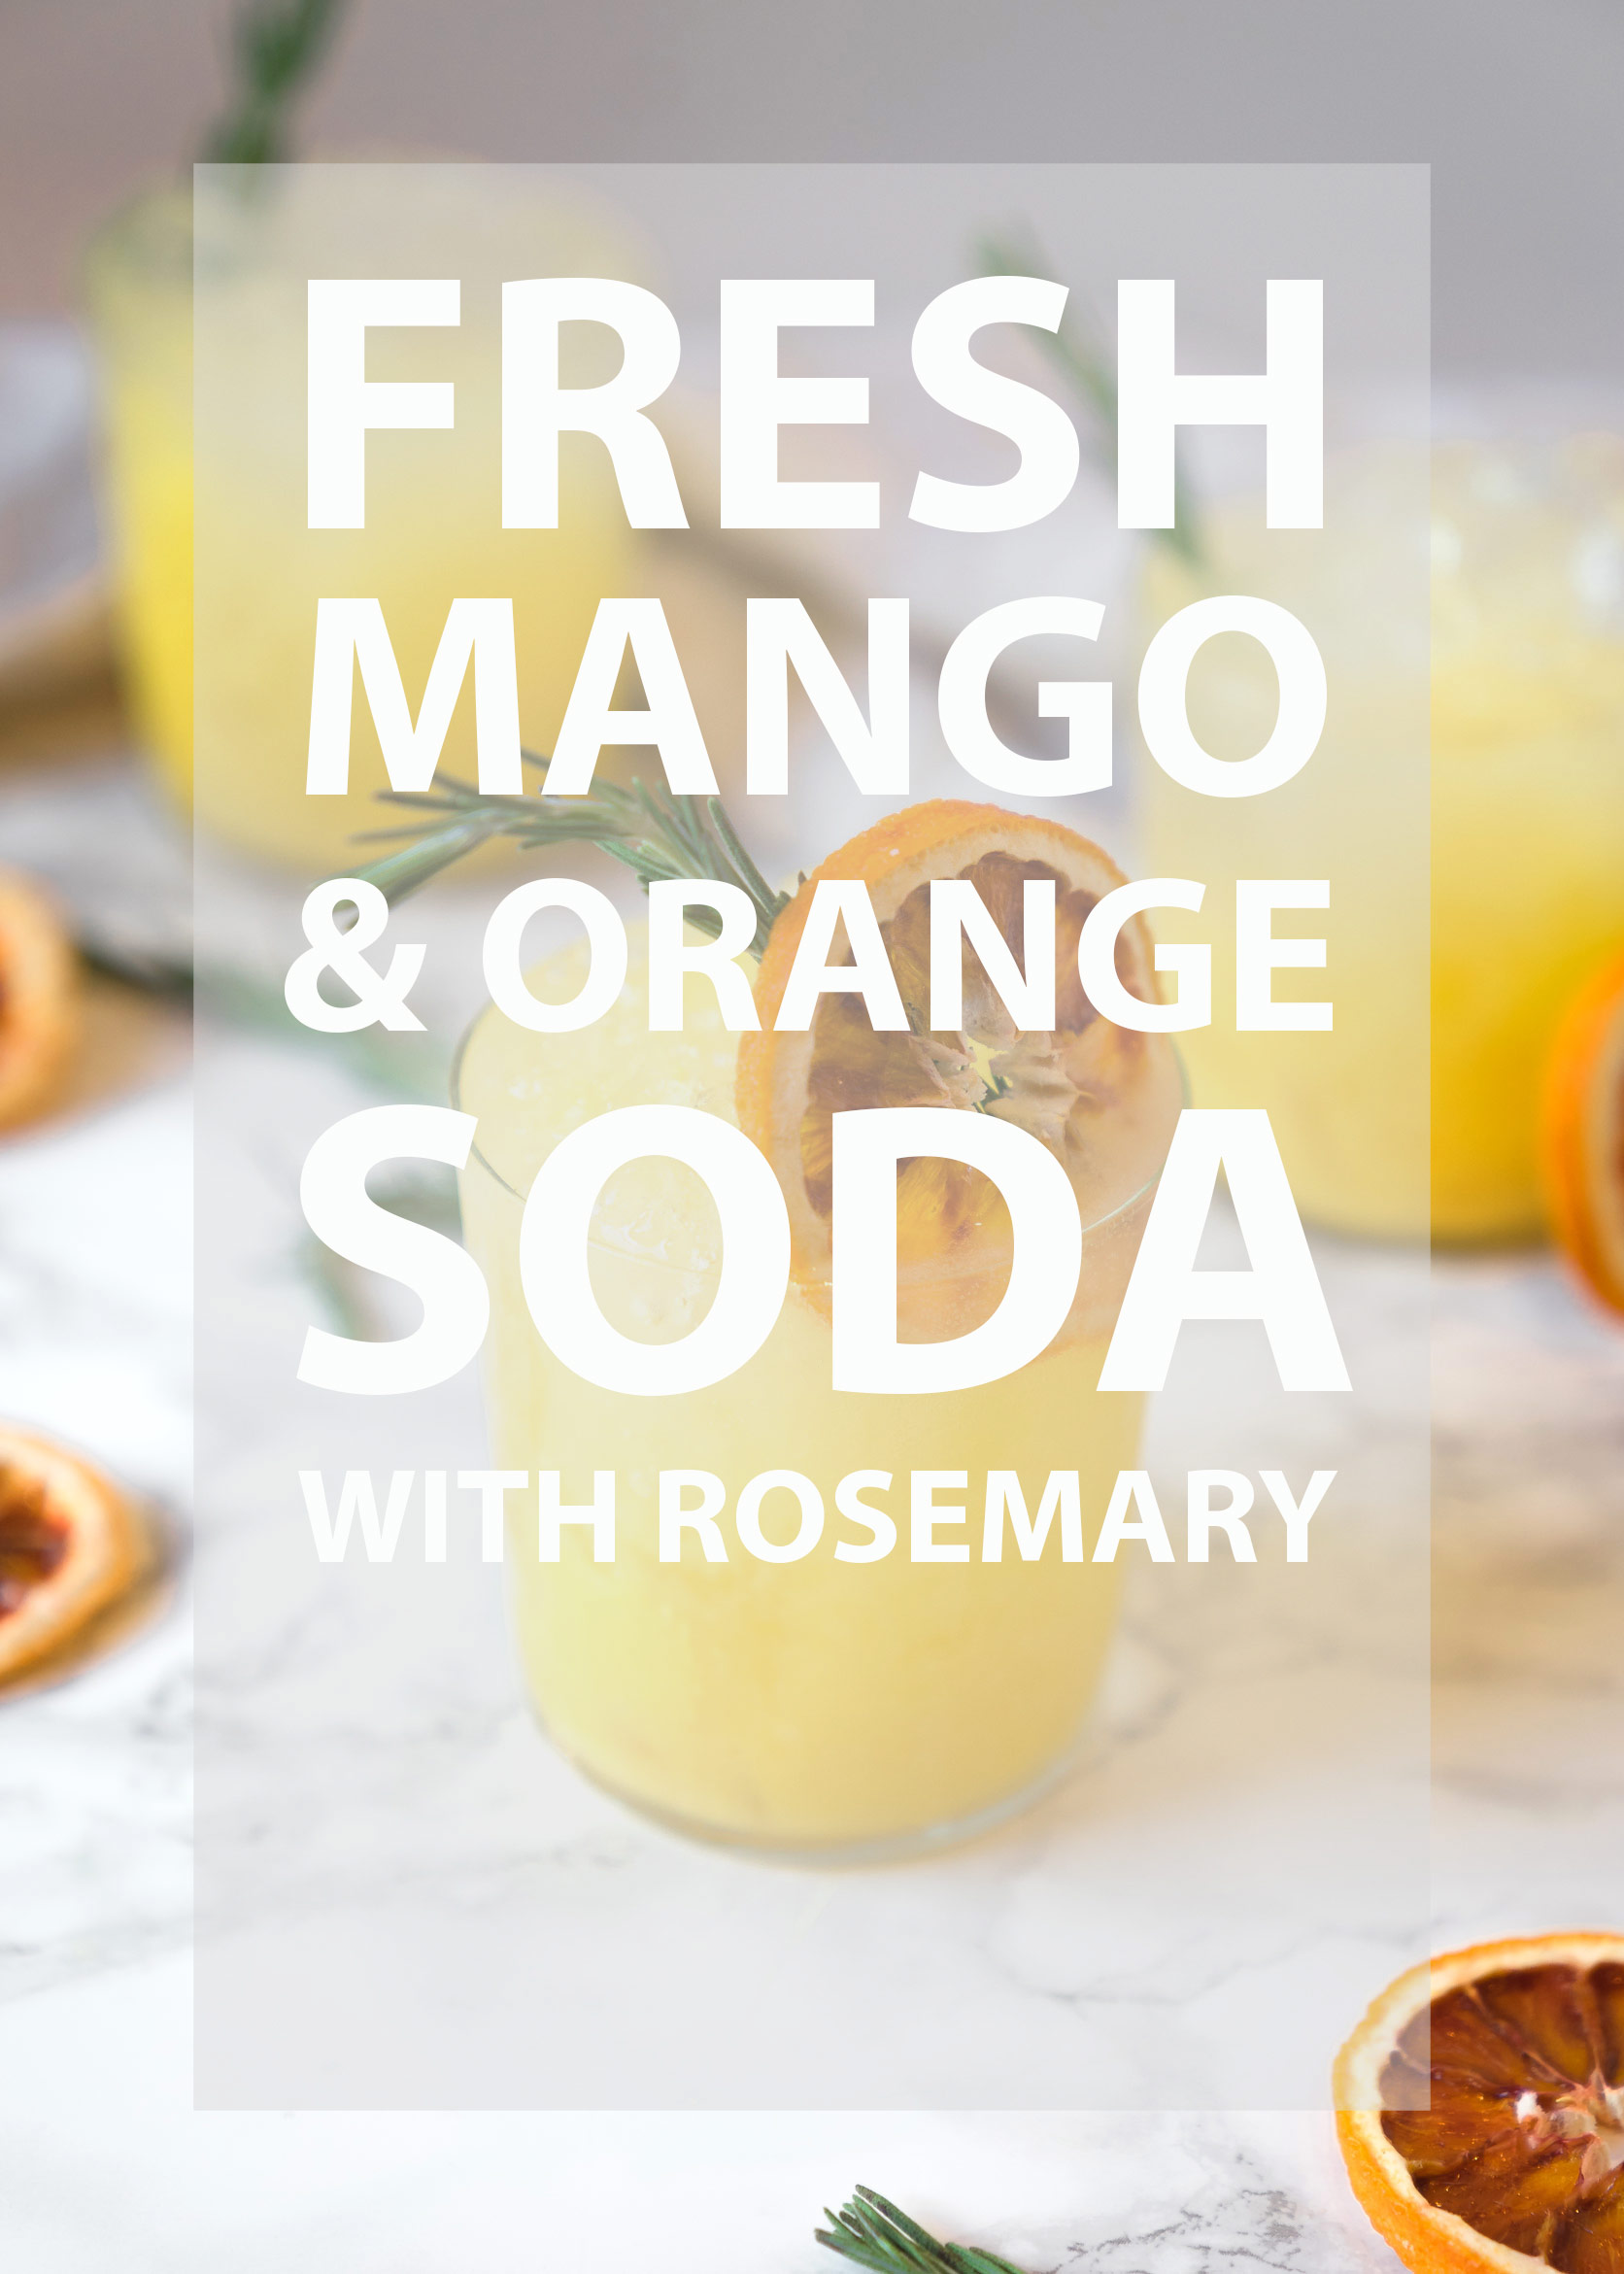 Fresh Mango & Orange Soda with Rosemary